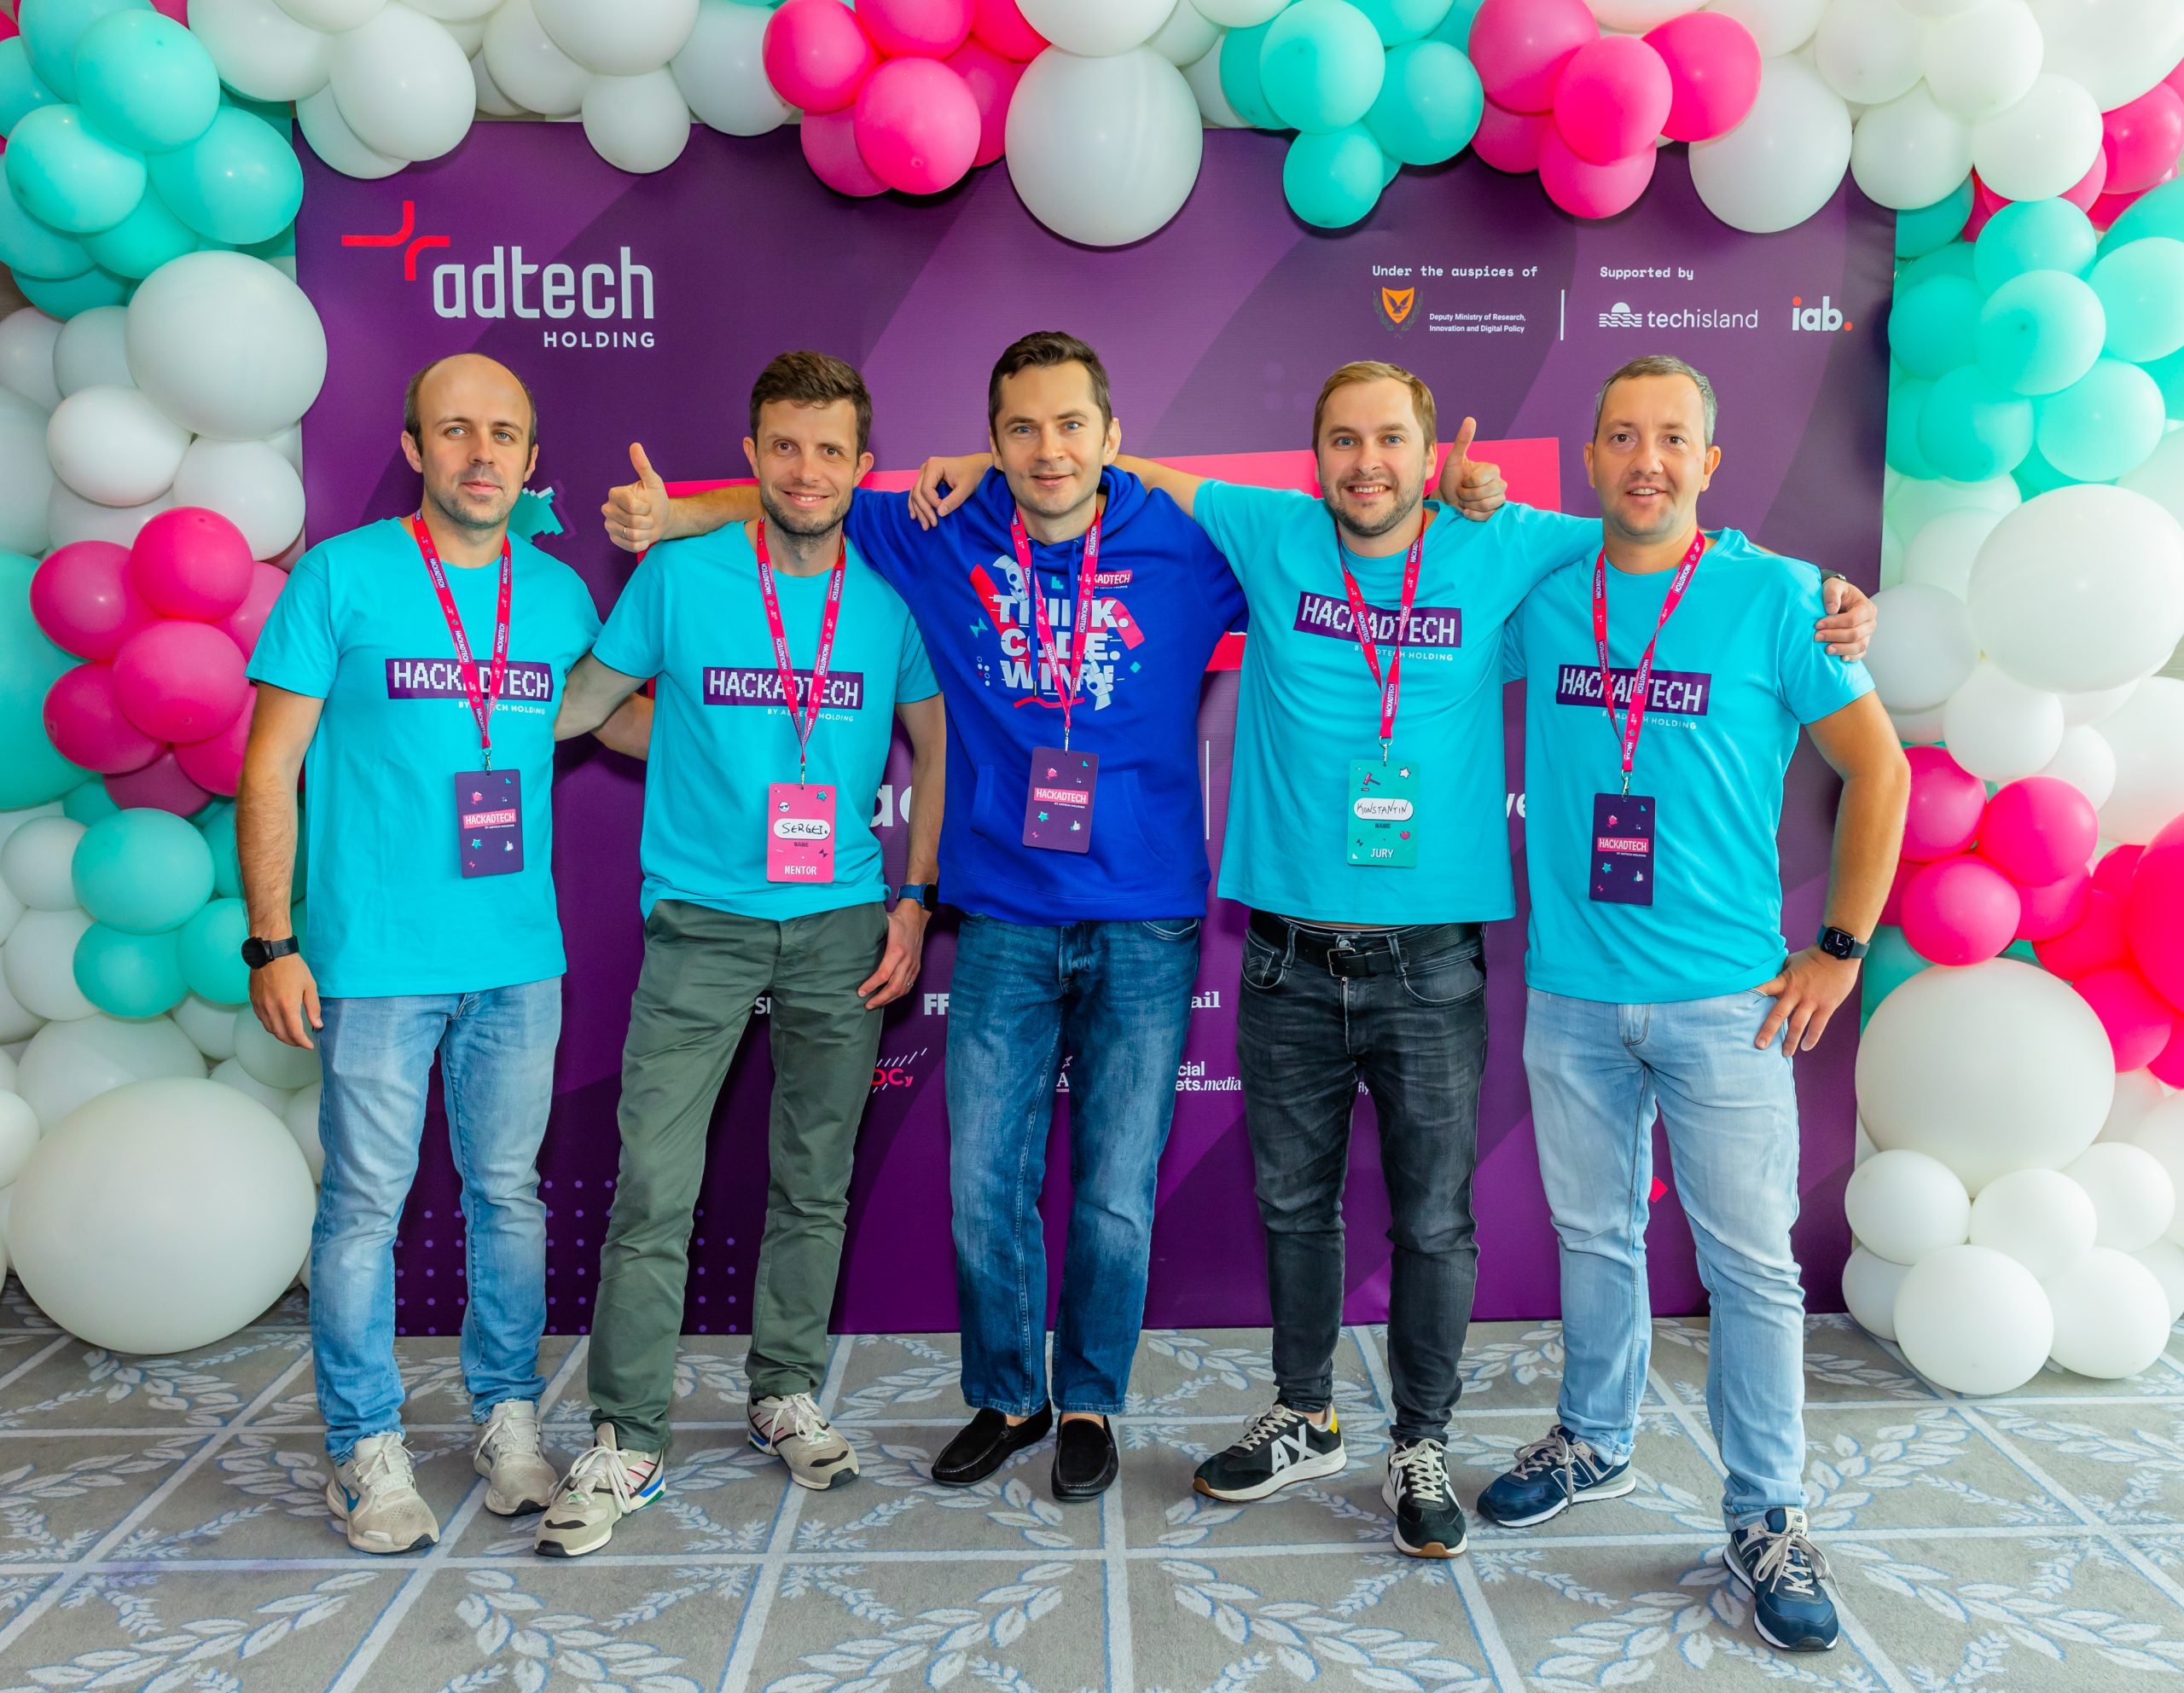 Adtech-hackathon-hackadtech23-mentors